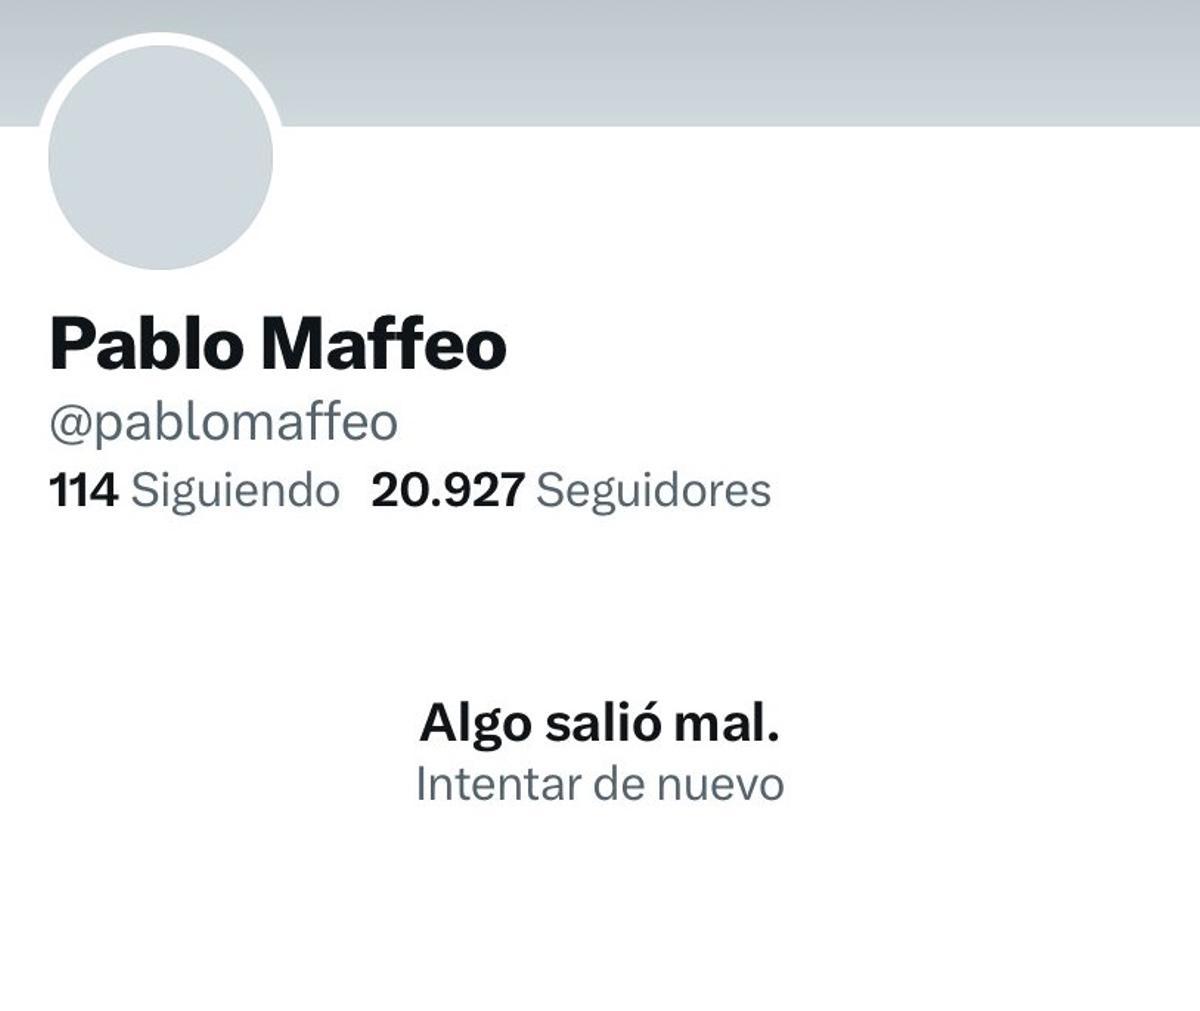 Así aparece la cuenta de Maffeo en Twitter.